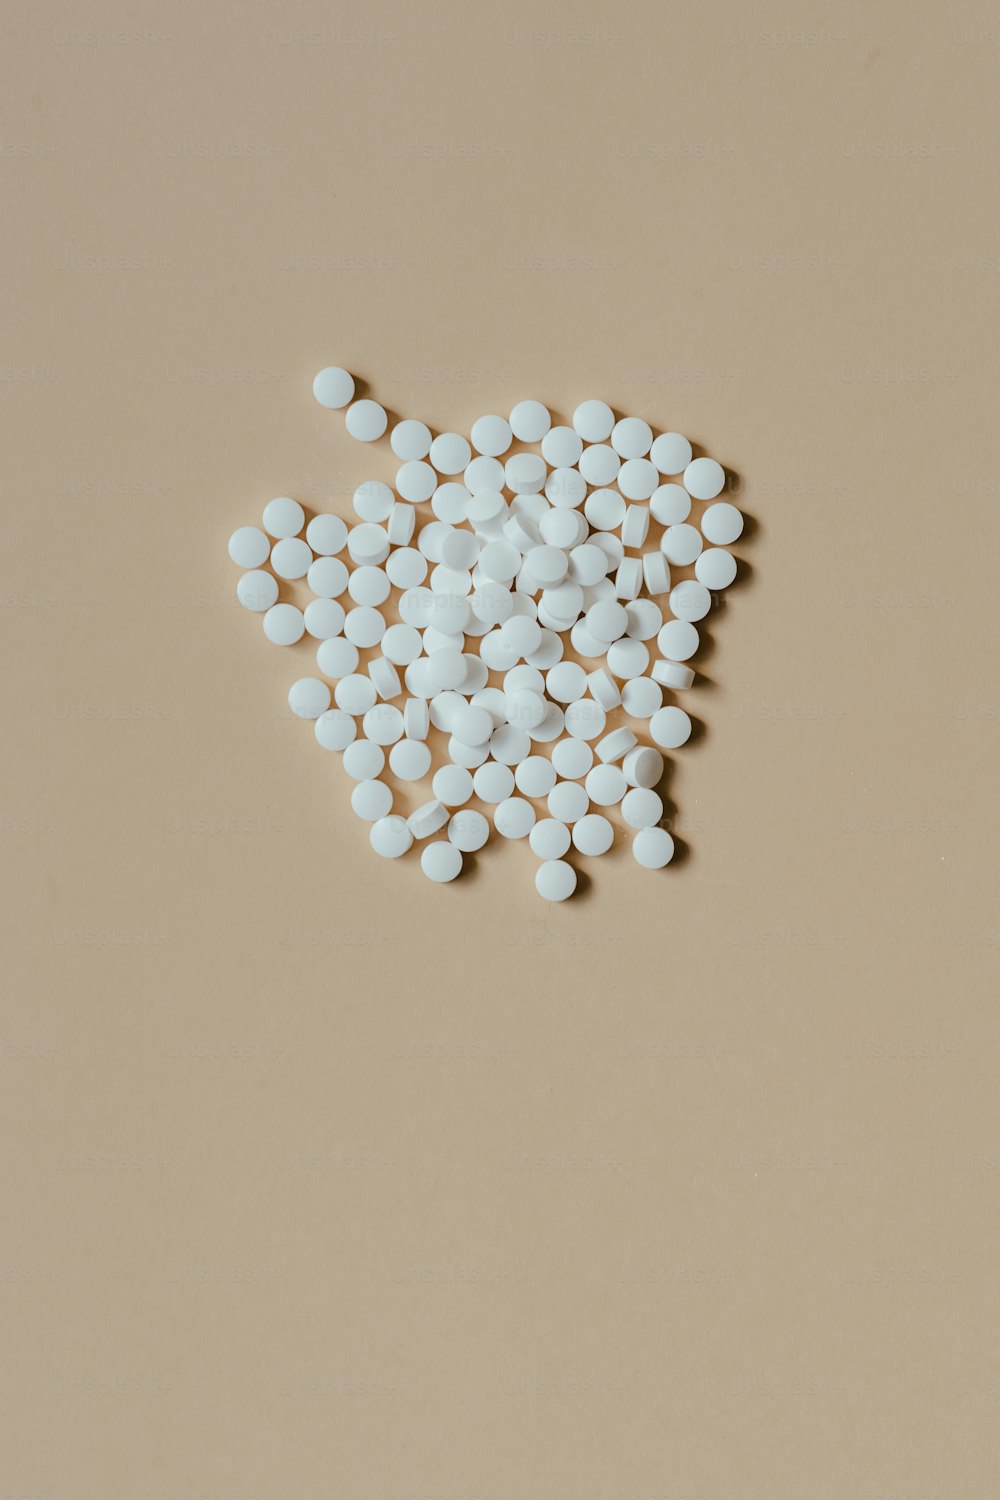 Ein Haufen weißer Pillen, die auf einem Tisch sitzen